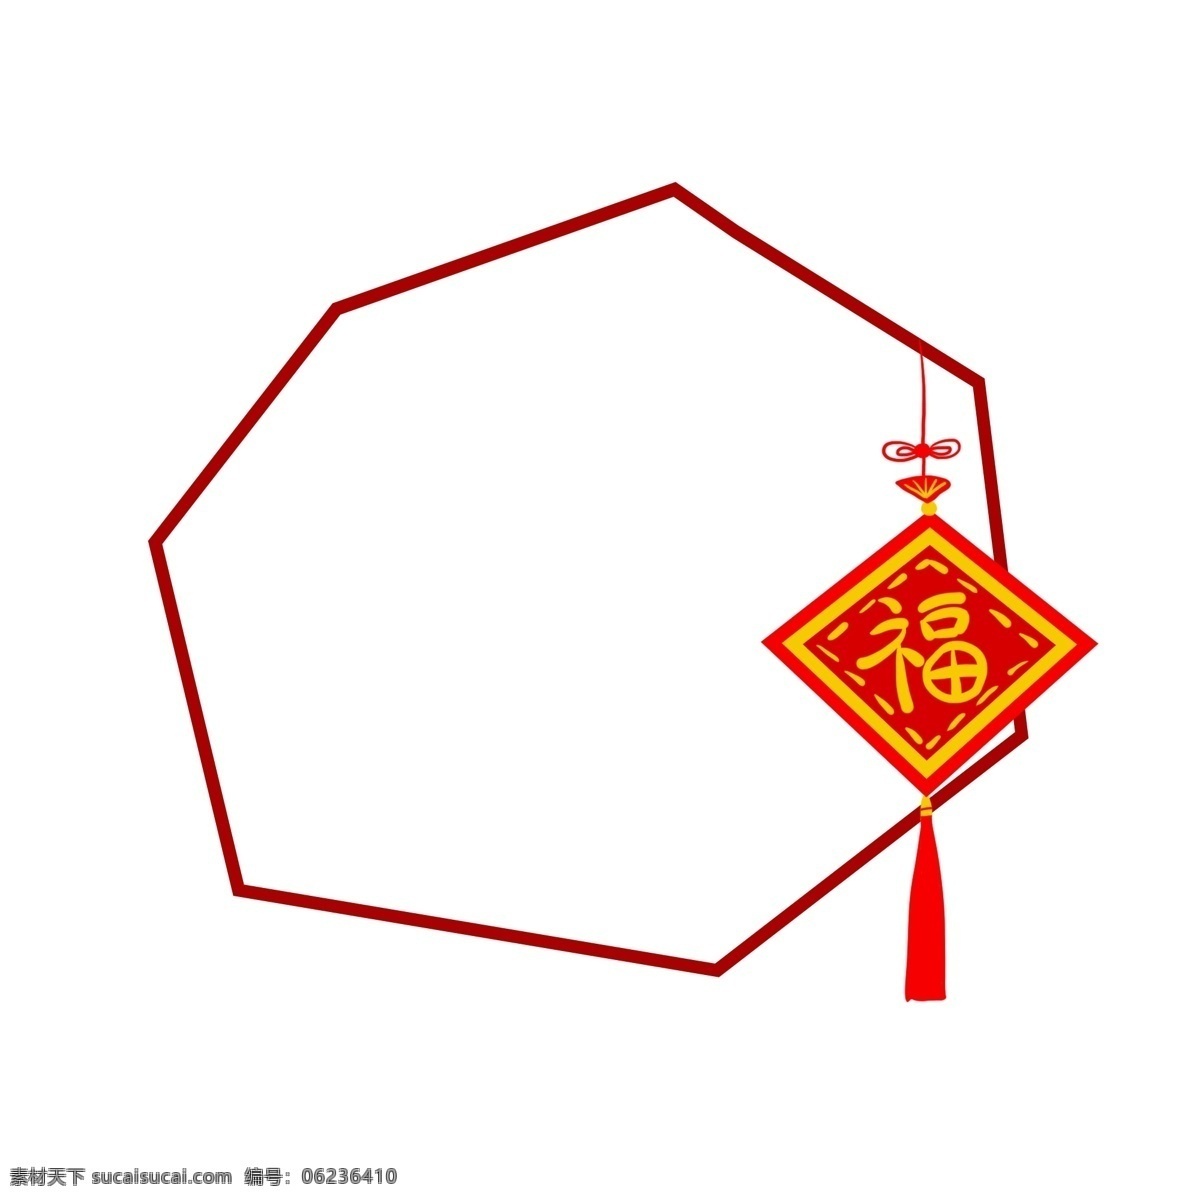 手绘 中国 红 新年 装 多边形 边框 福字 中国风 节日边框 喜庆边框 新年边框 红色边框 新春边框 中国红边框